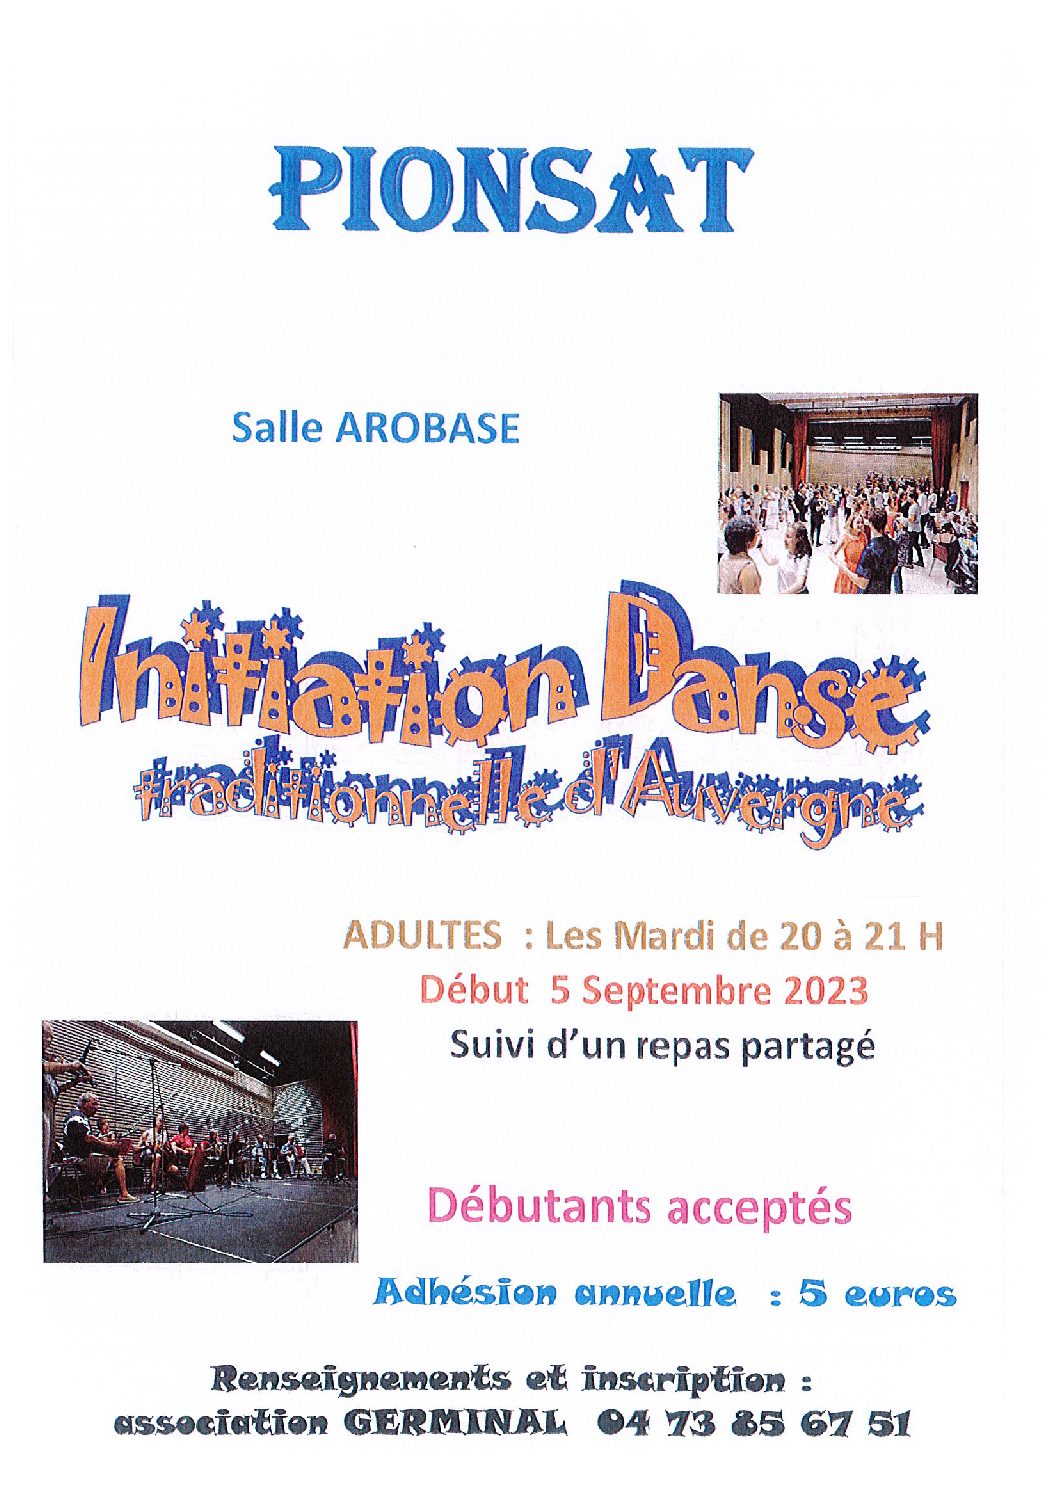 Initiation Danse Traditionnelle d’Auvergne à Pionsat